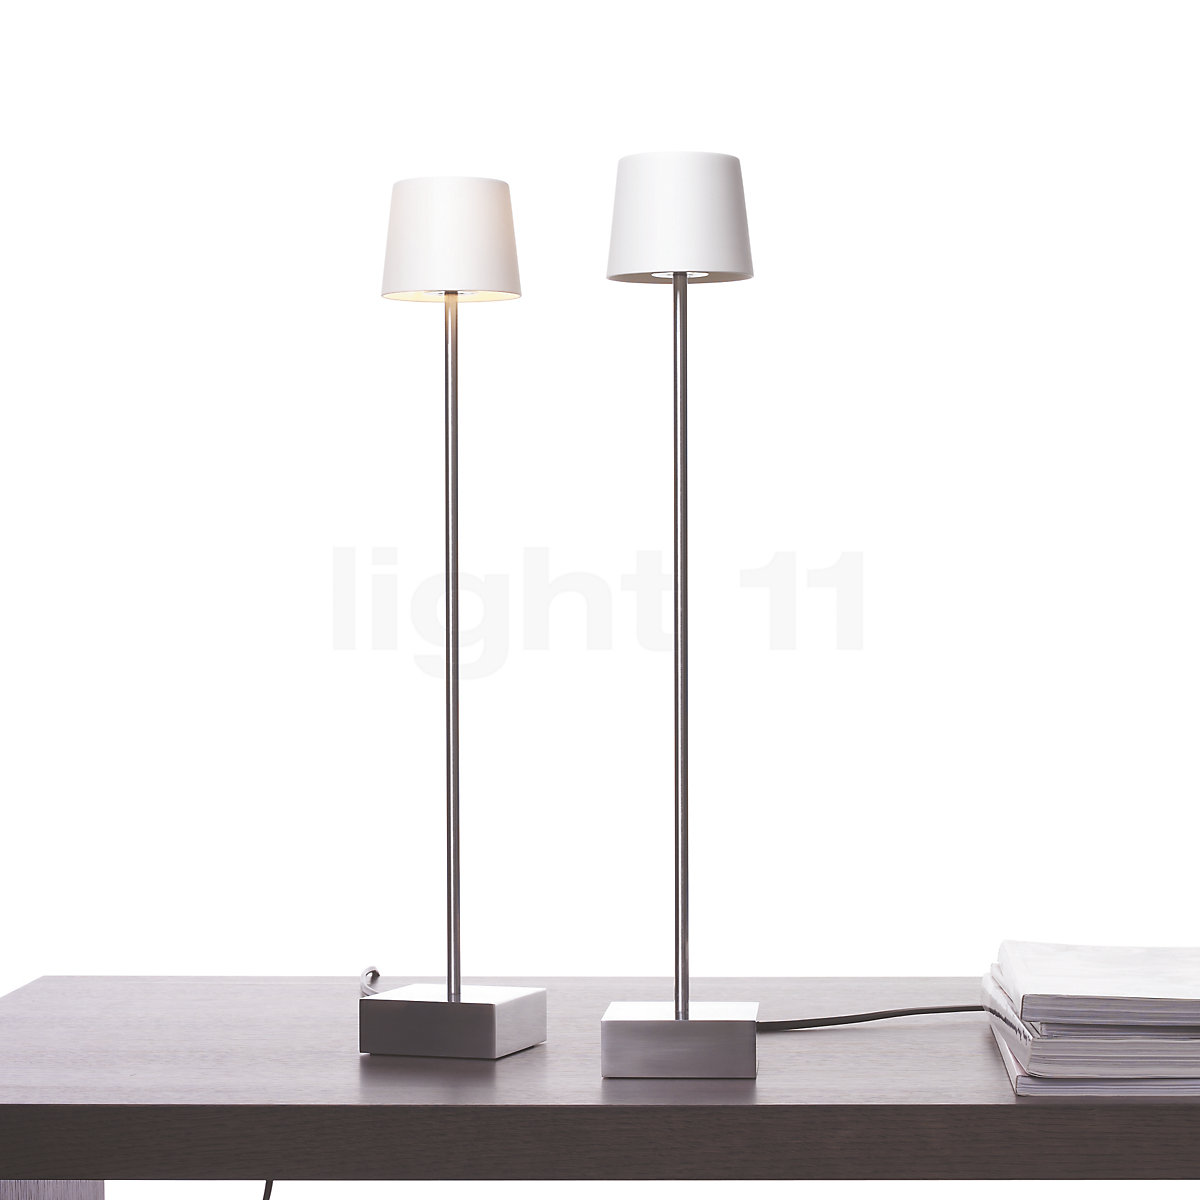 Anta Cut Table Lamp At Light11 Eu, Tall Skinny Black Table Lamp